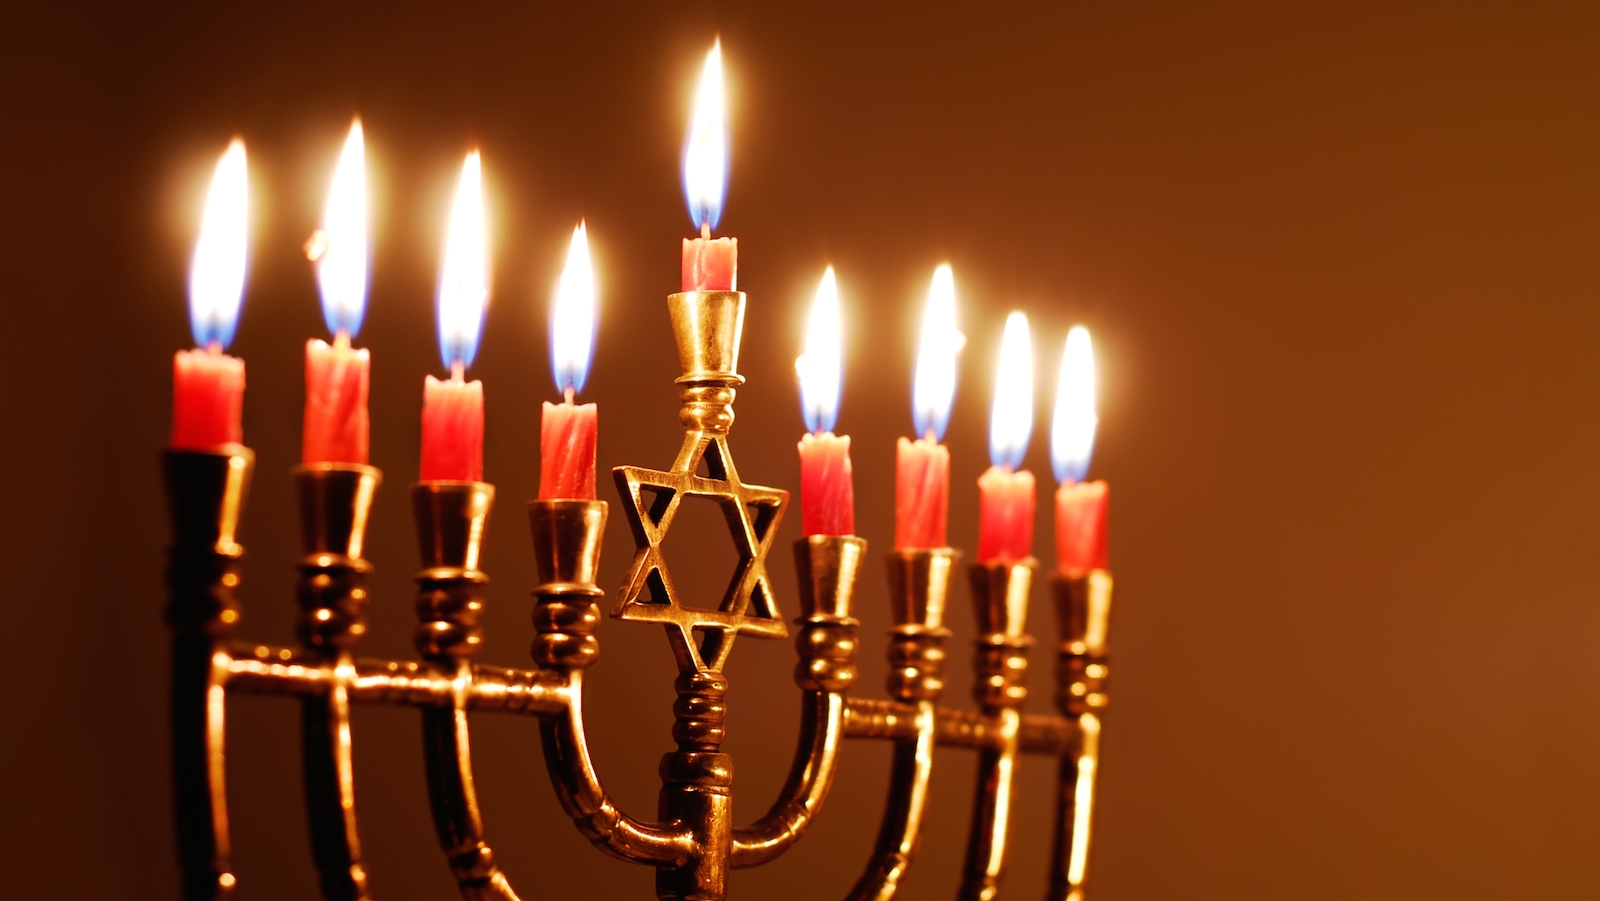 The Hanukkiah (Hanukkah Menorah) | My Jewish Learning